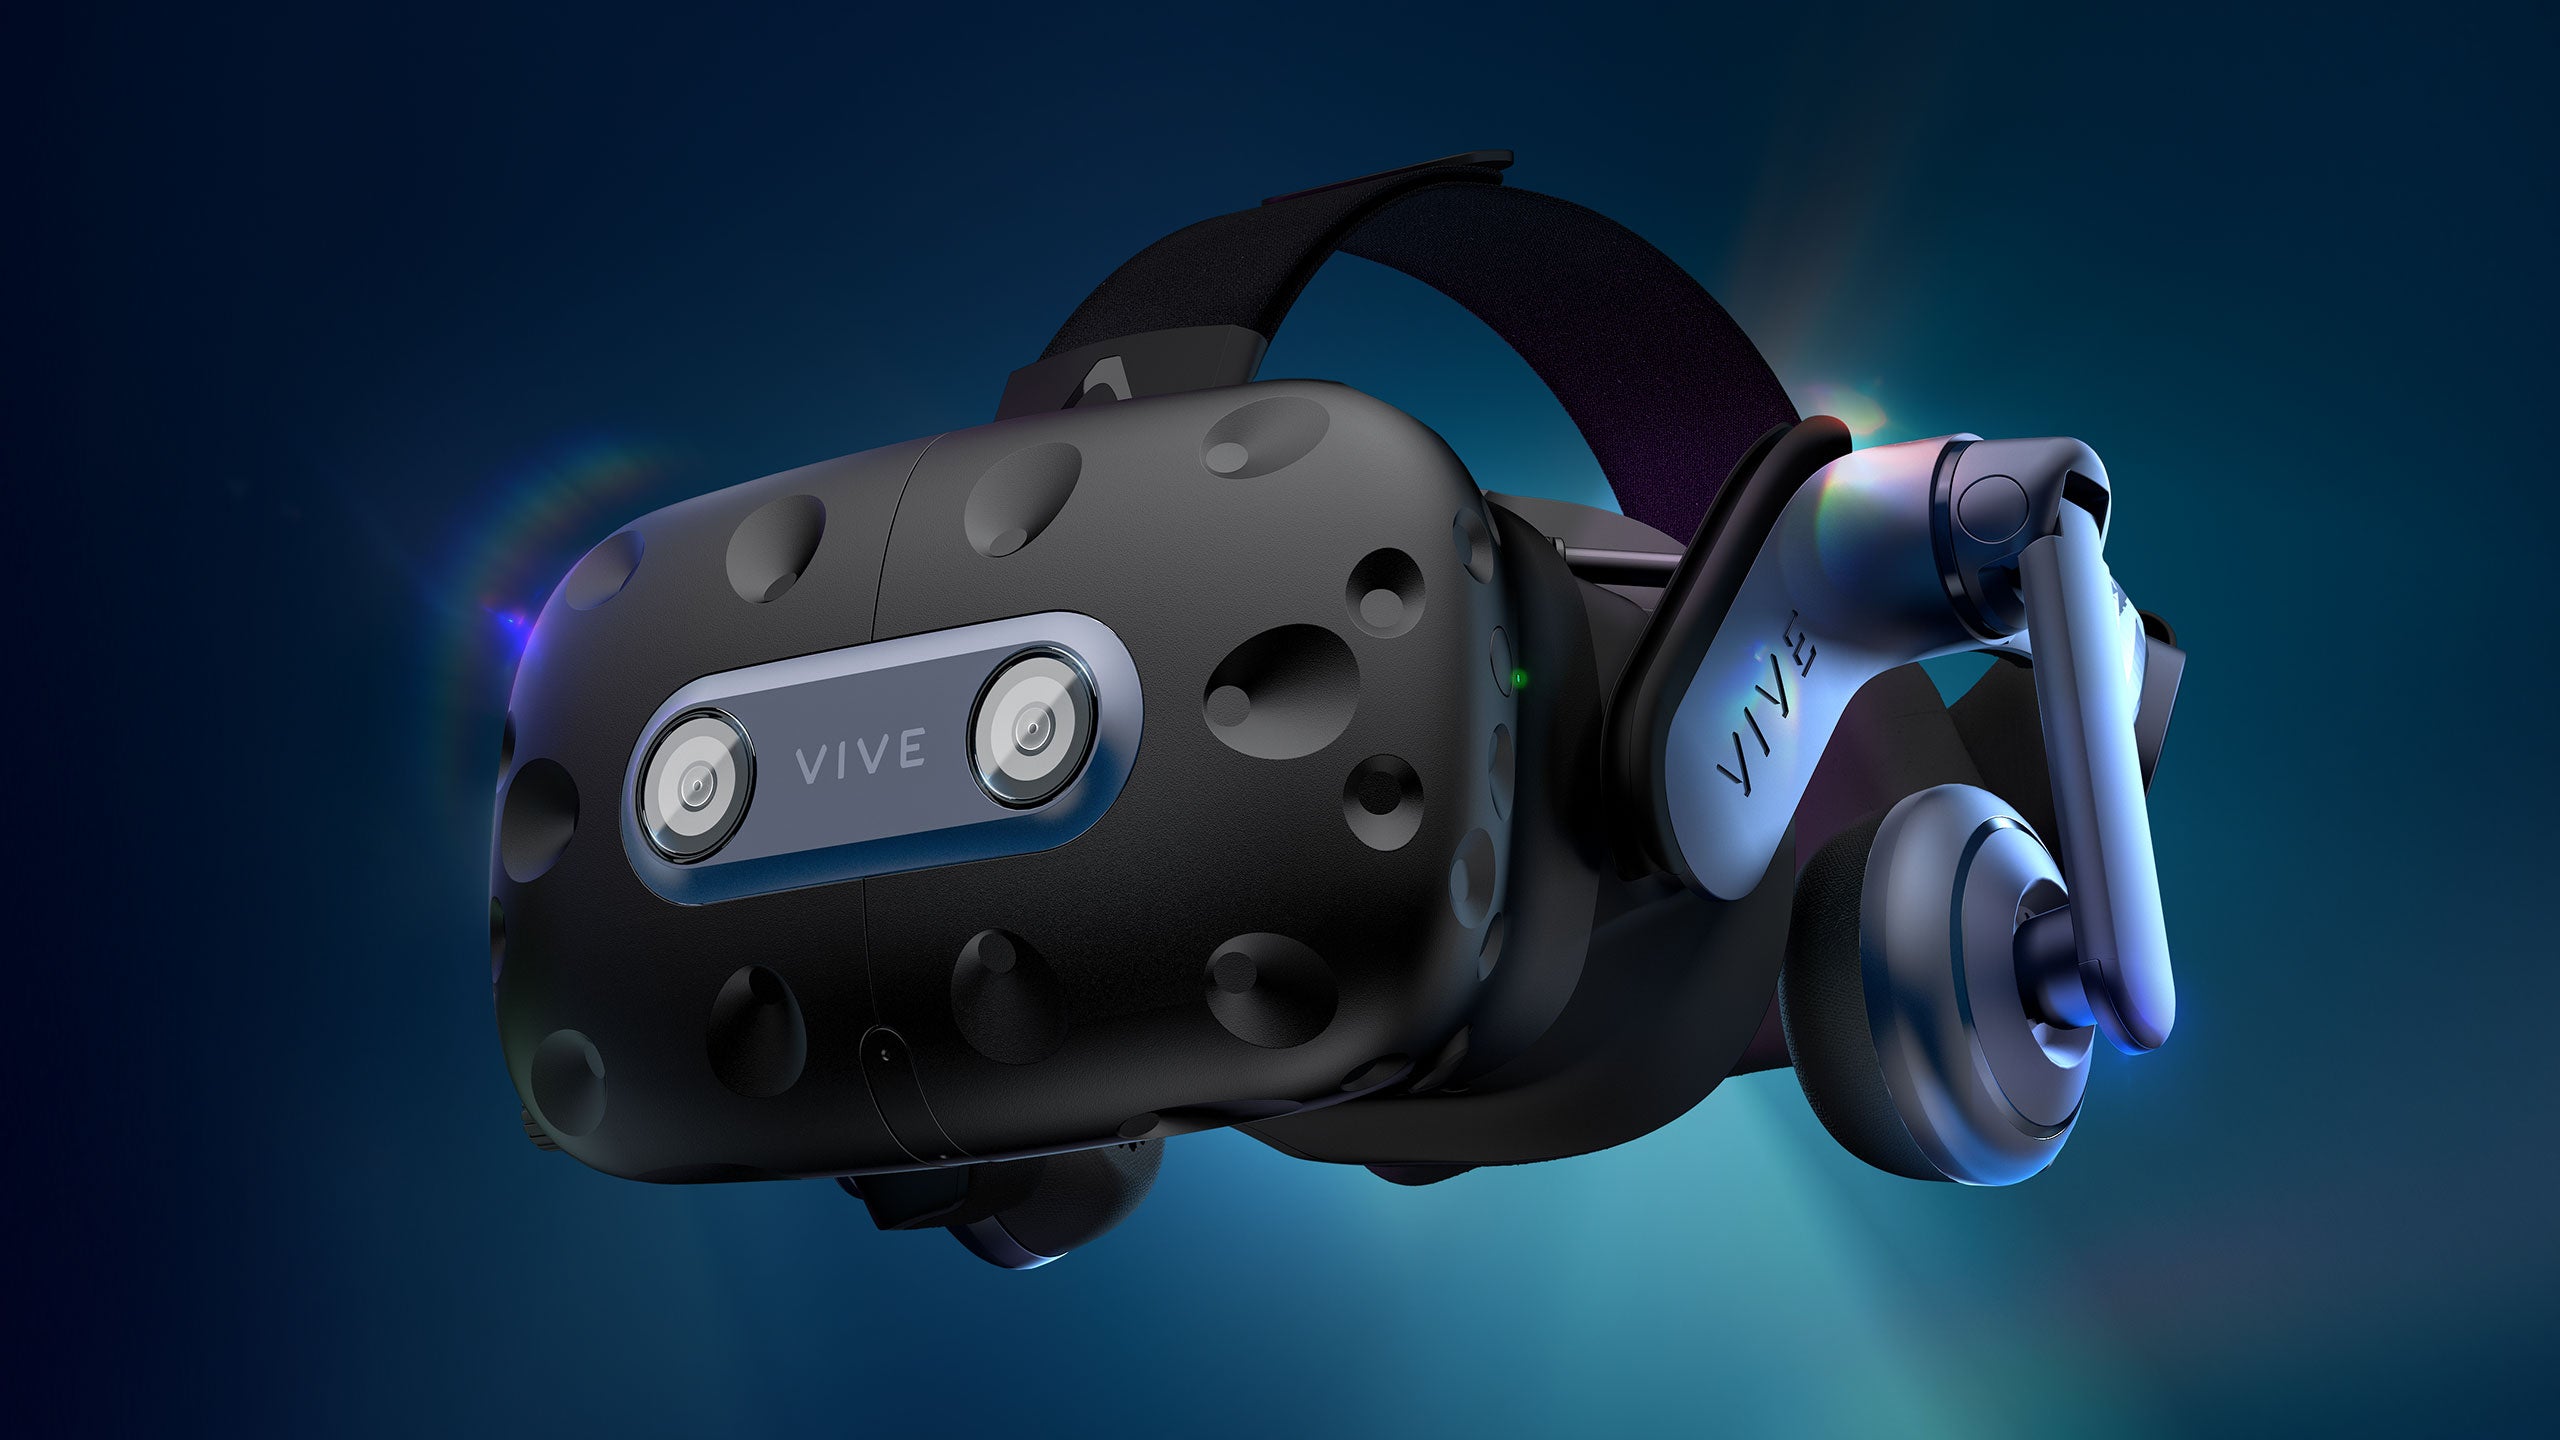 Óculos de realidade virtual nas cores preta com detalhes azul